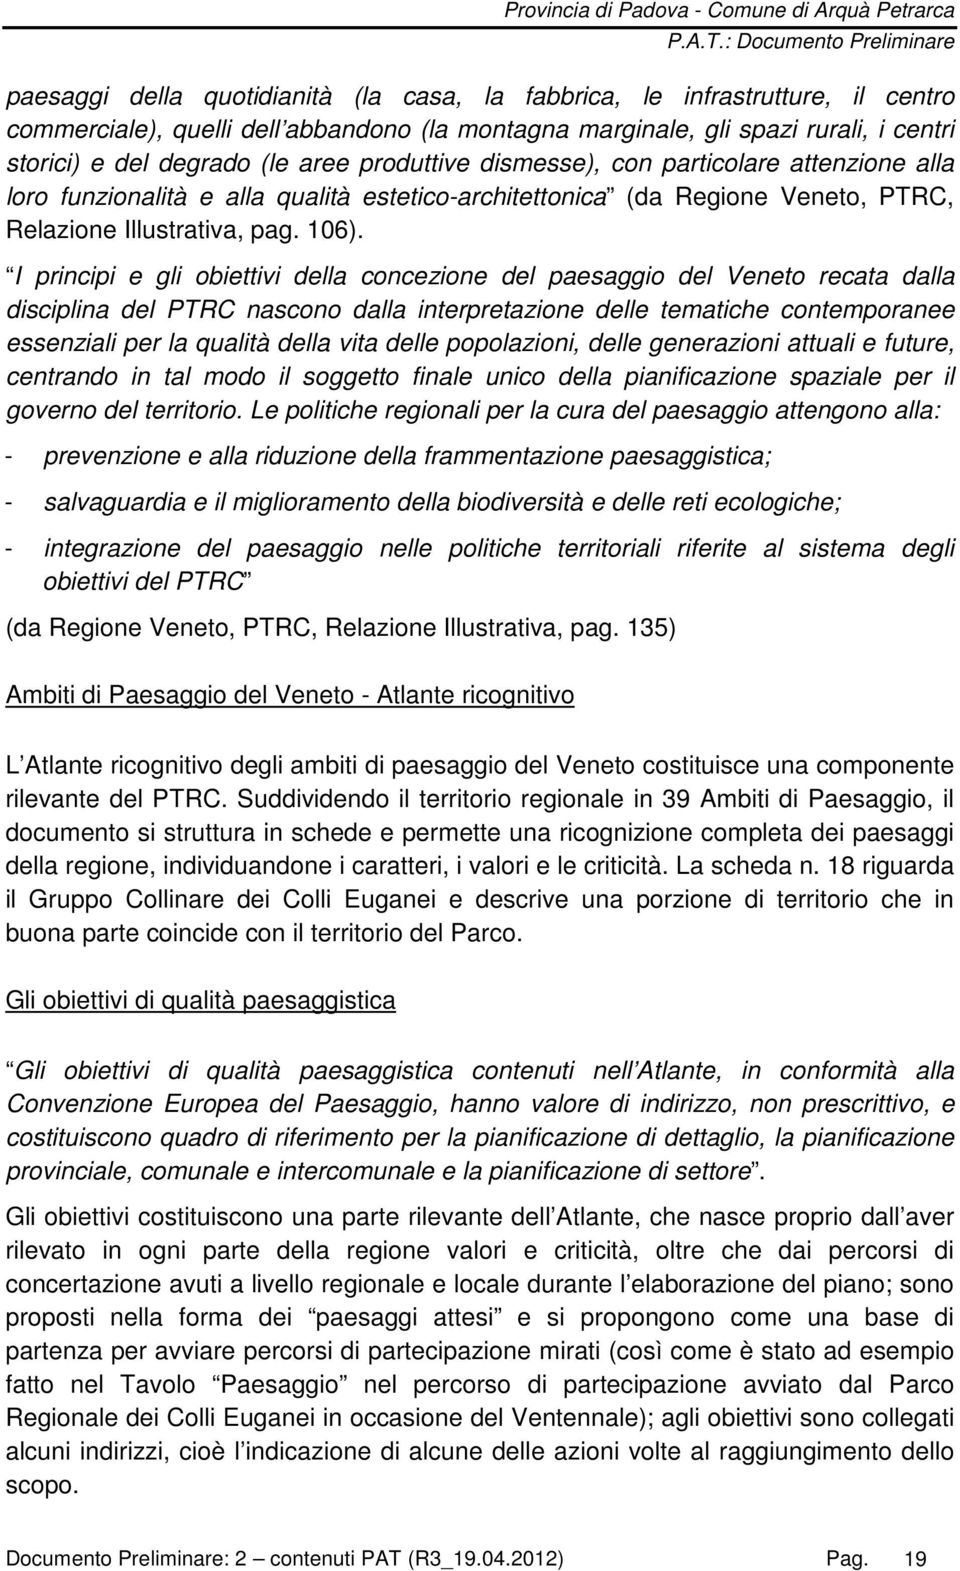 I principi e gli obiettivi della concezione del paesaggio del Veneto recata dalla disciplina del PTRC nascono dalla interpretazione delle tematiche contemporanee essenziali per la qualità della vita